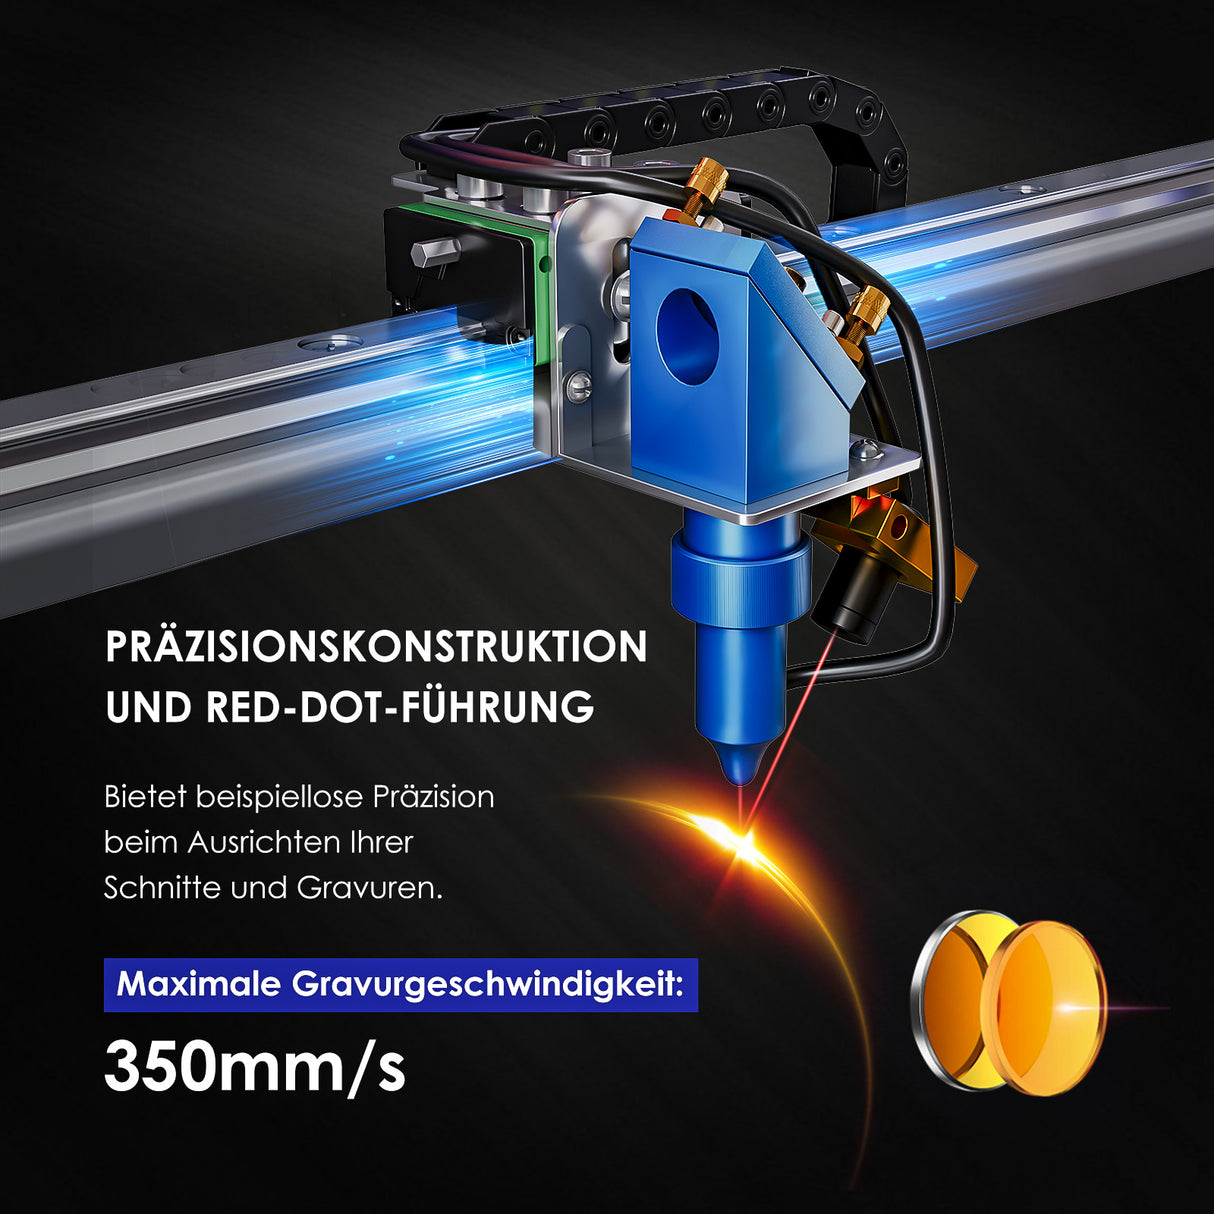 Monport 40W Pro Lightburn-unterstützter (12" X 8") CO2-Lasergravierer & -Schneider mit Luftunterstützung